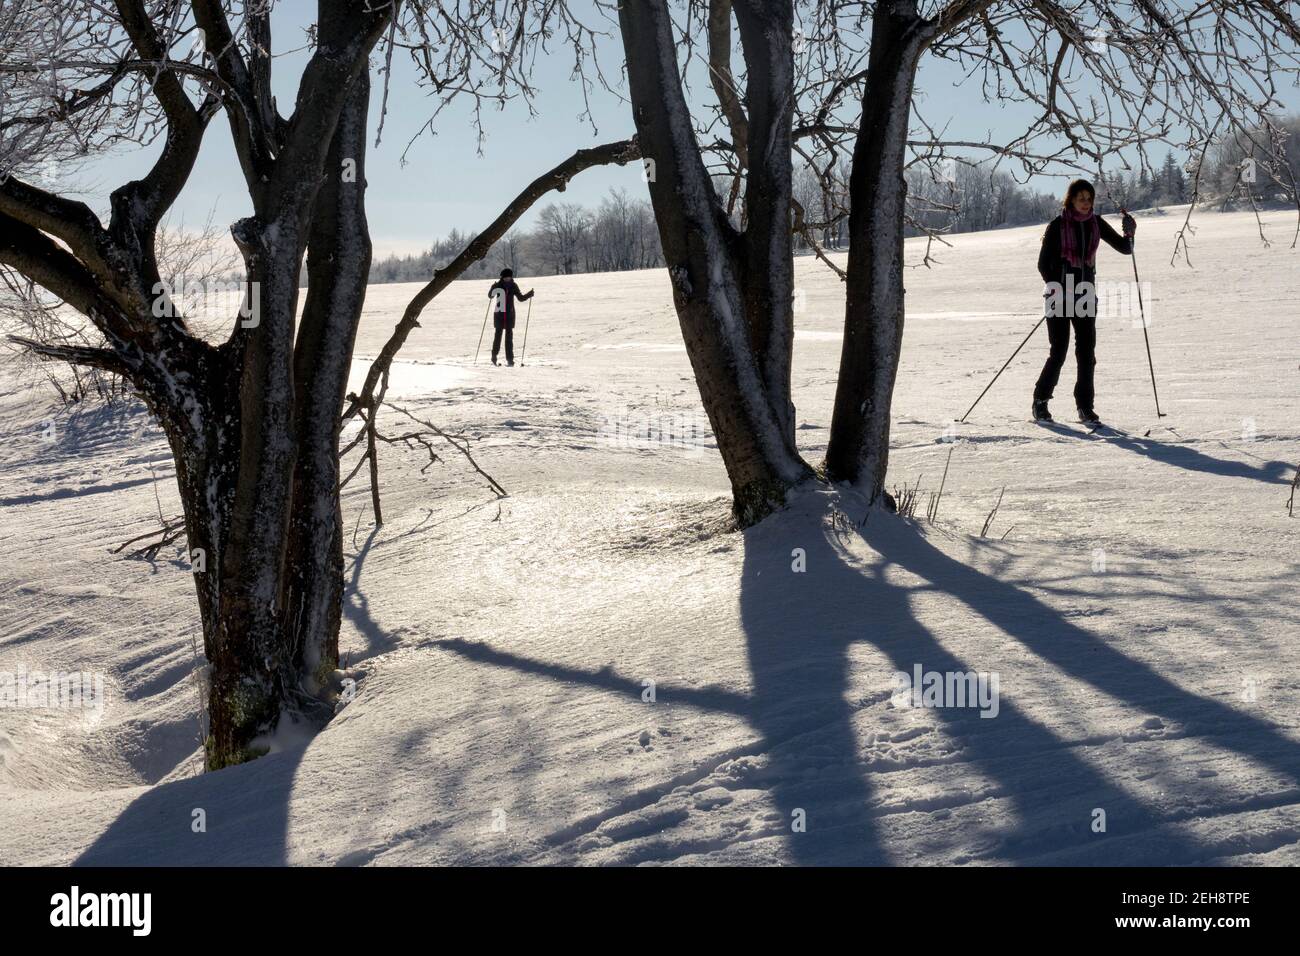 Ombres d'arbres dans un paysage hivernal enneigé avec deux skieurs, ski de fond Banque D'Images